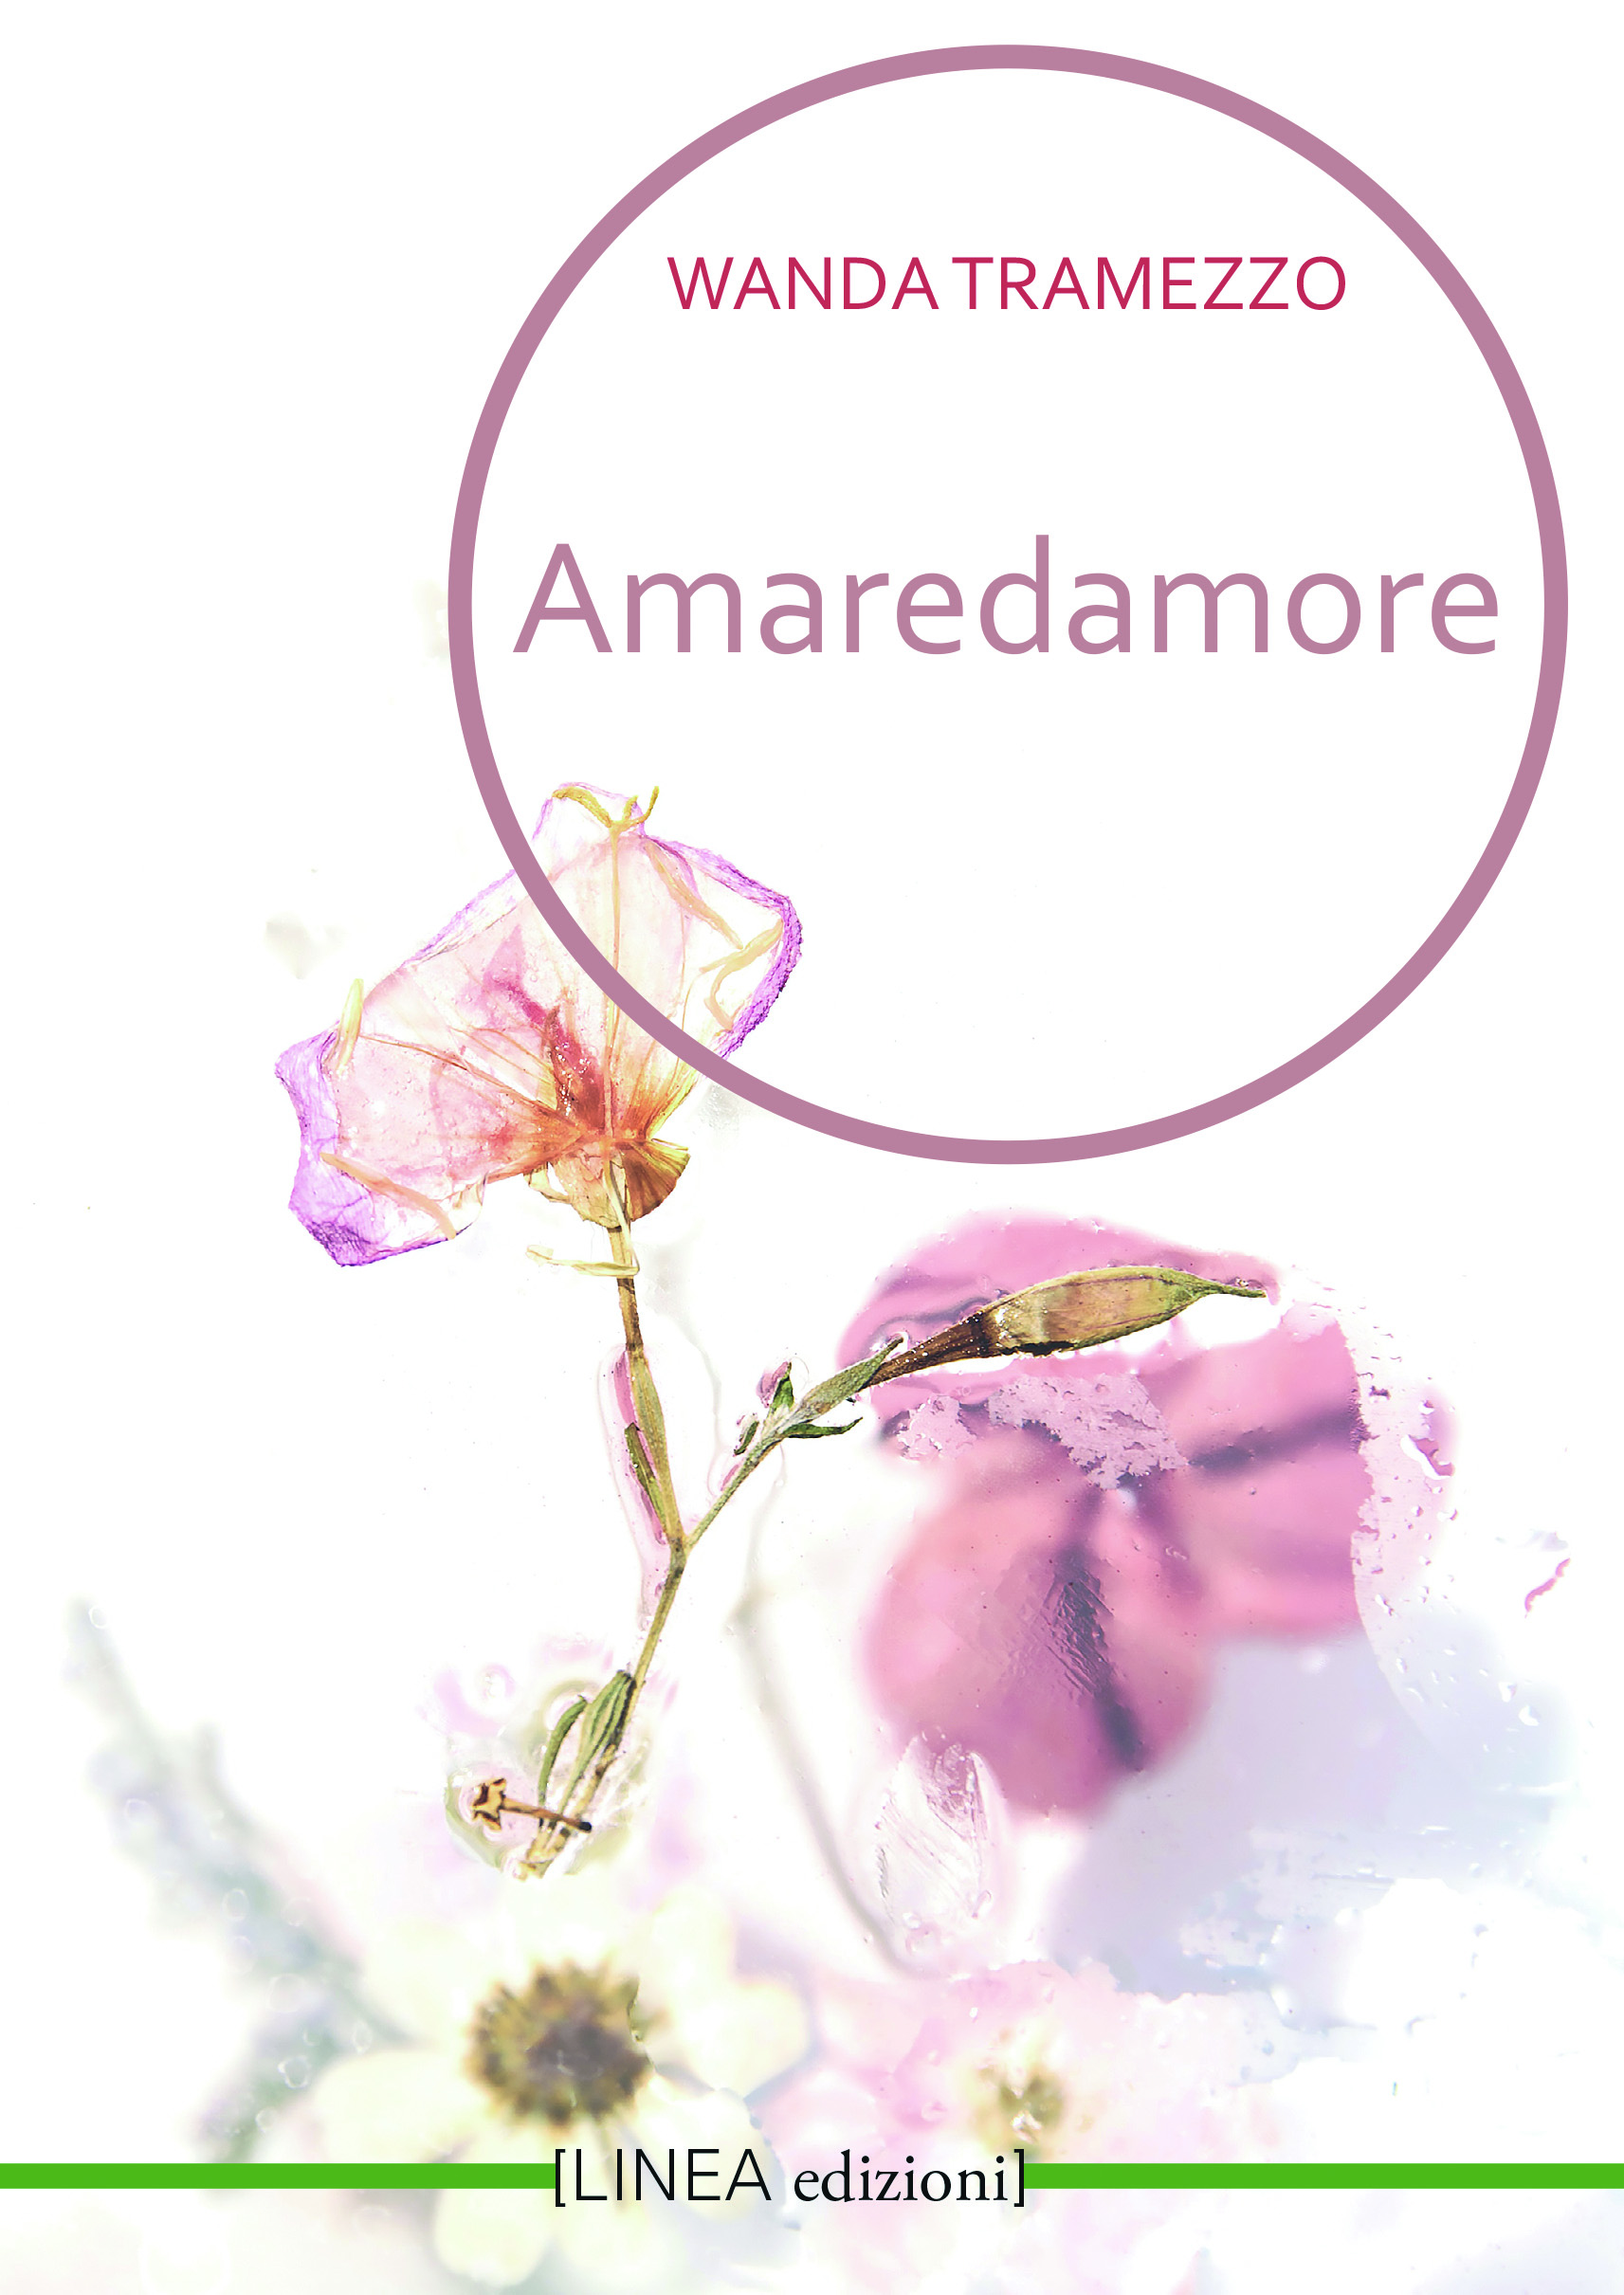 Solo copertina Amaredamore.indd